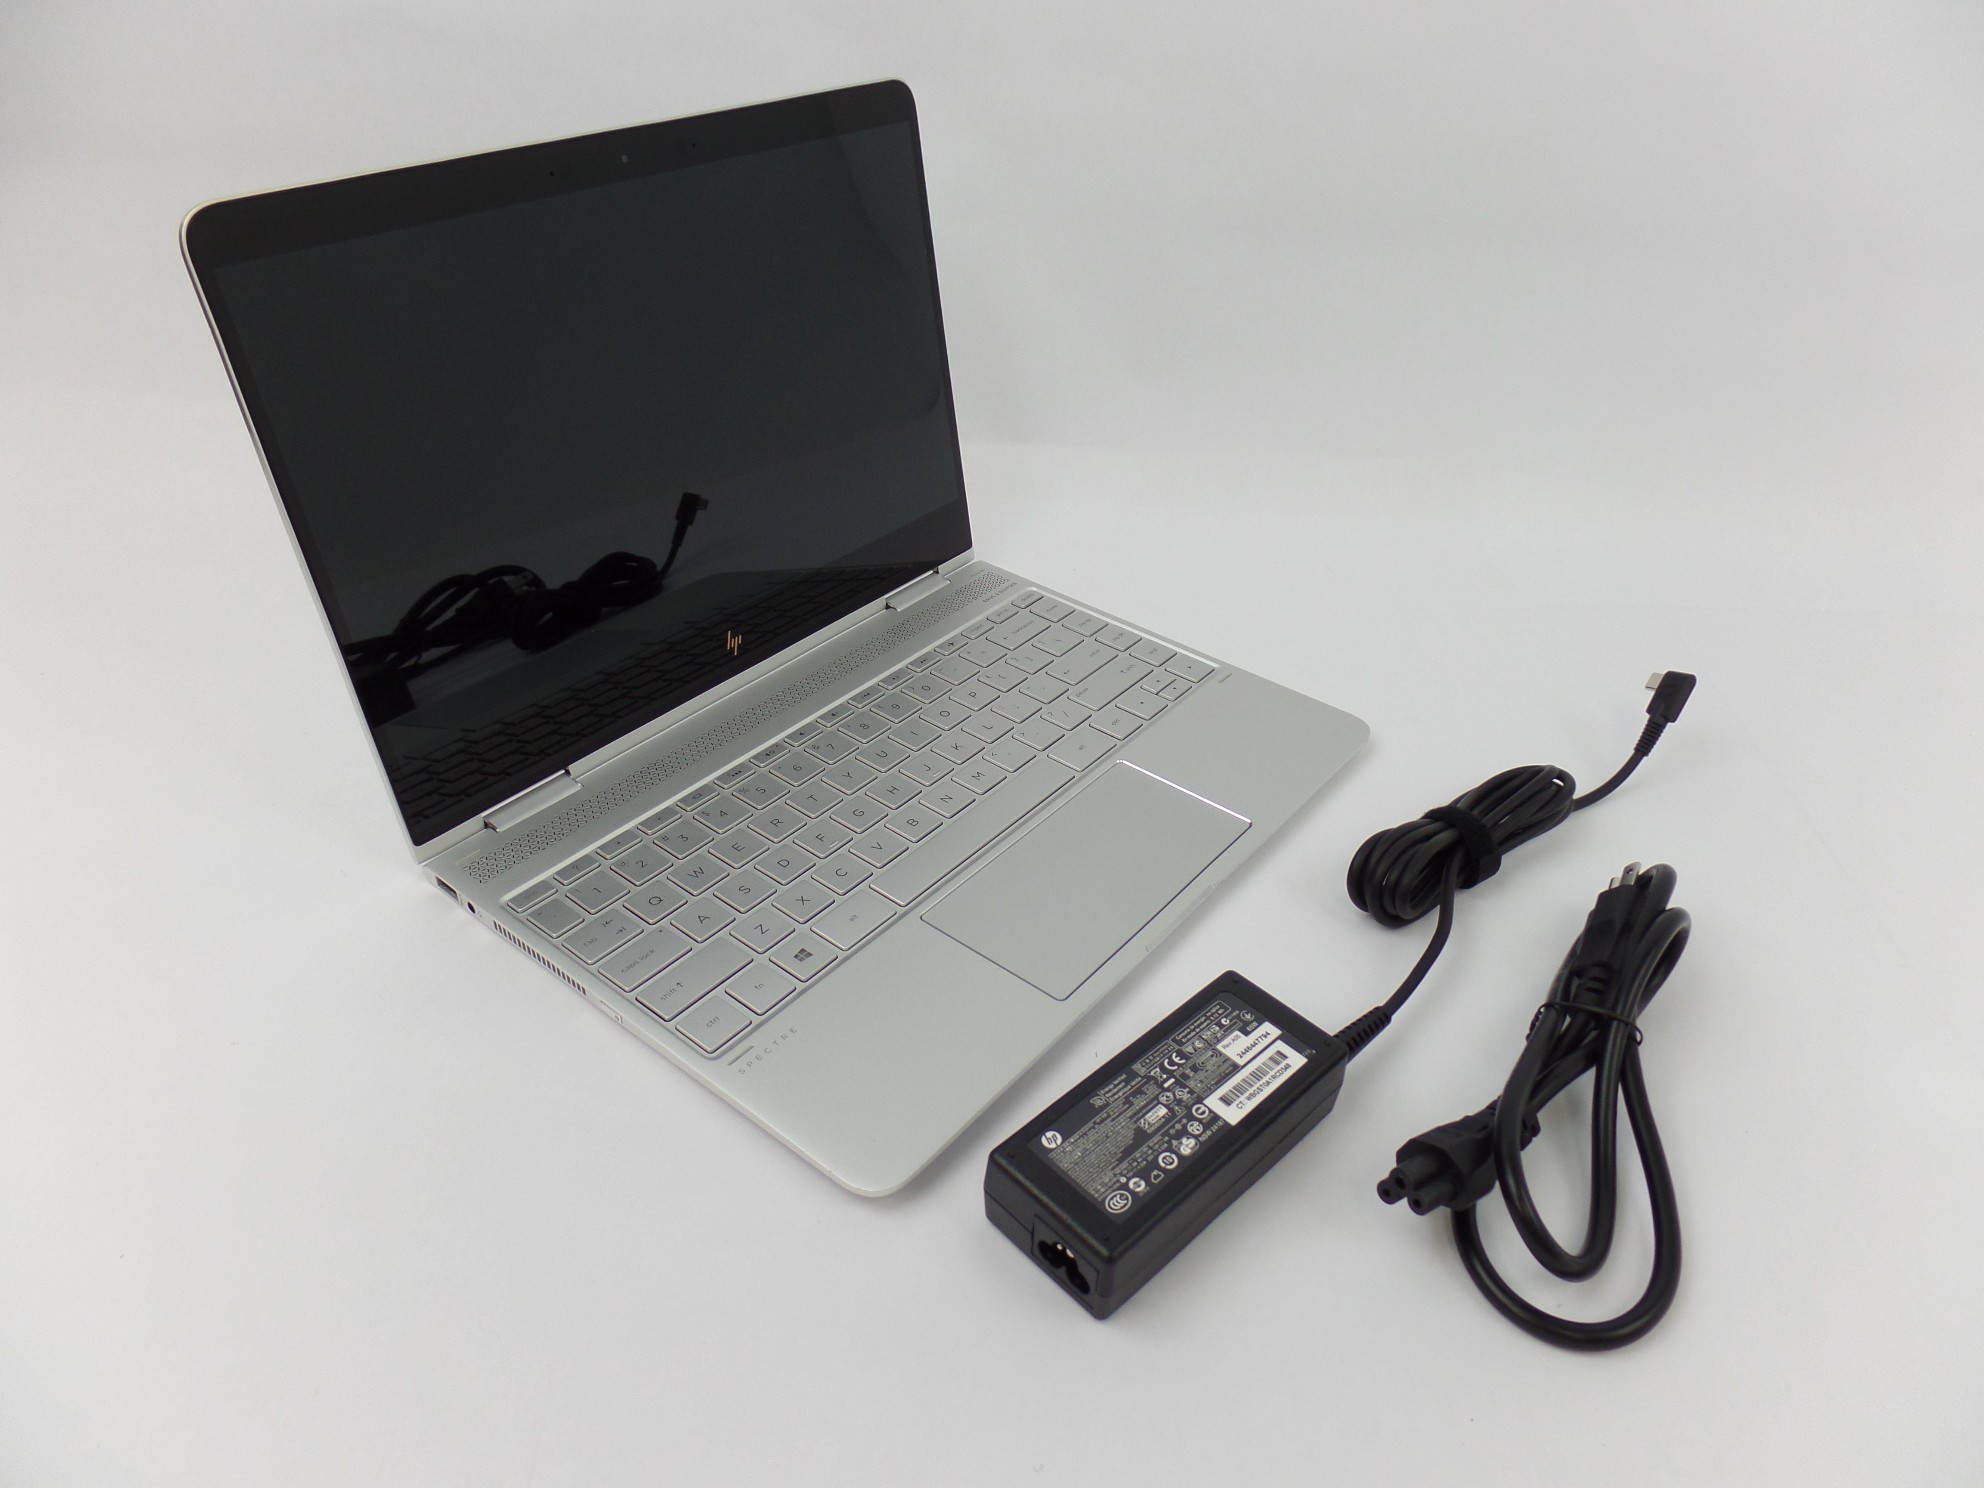 HP Spectre x360 13-ac023dx 13.3" FHD Touch i7-7500U 16GB 512GB W10H 2in1 Laptop